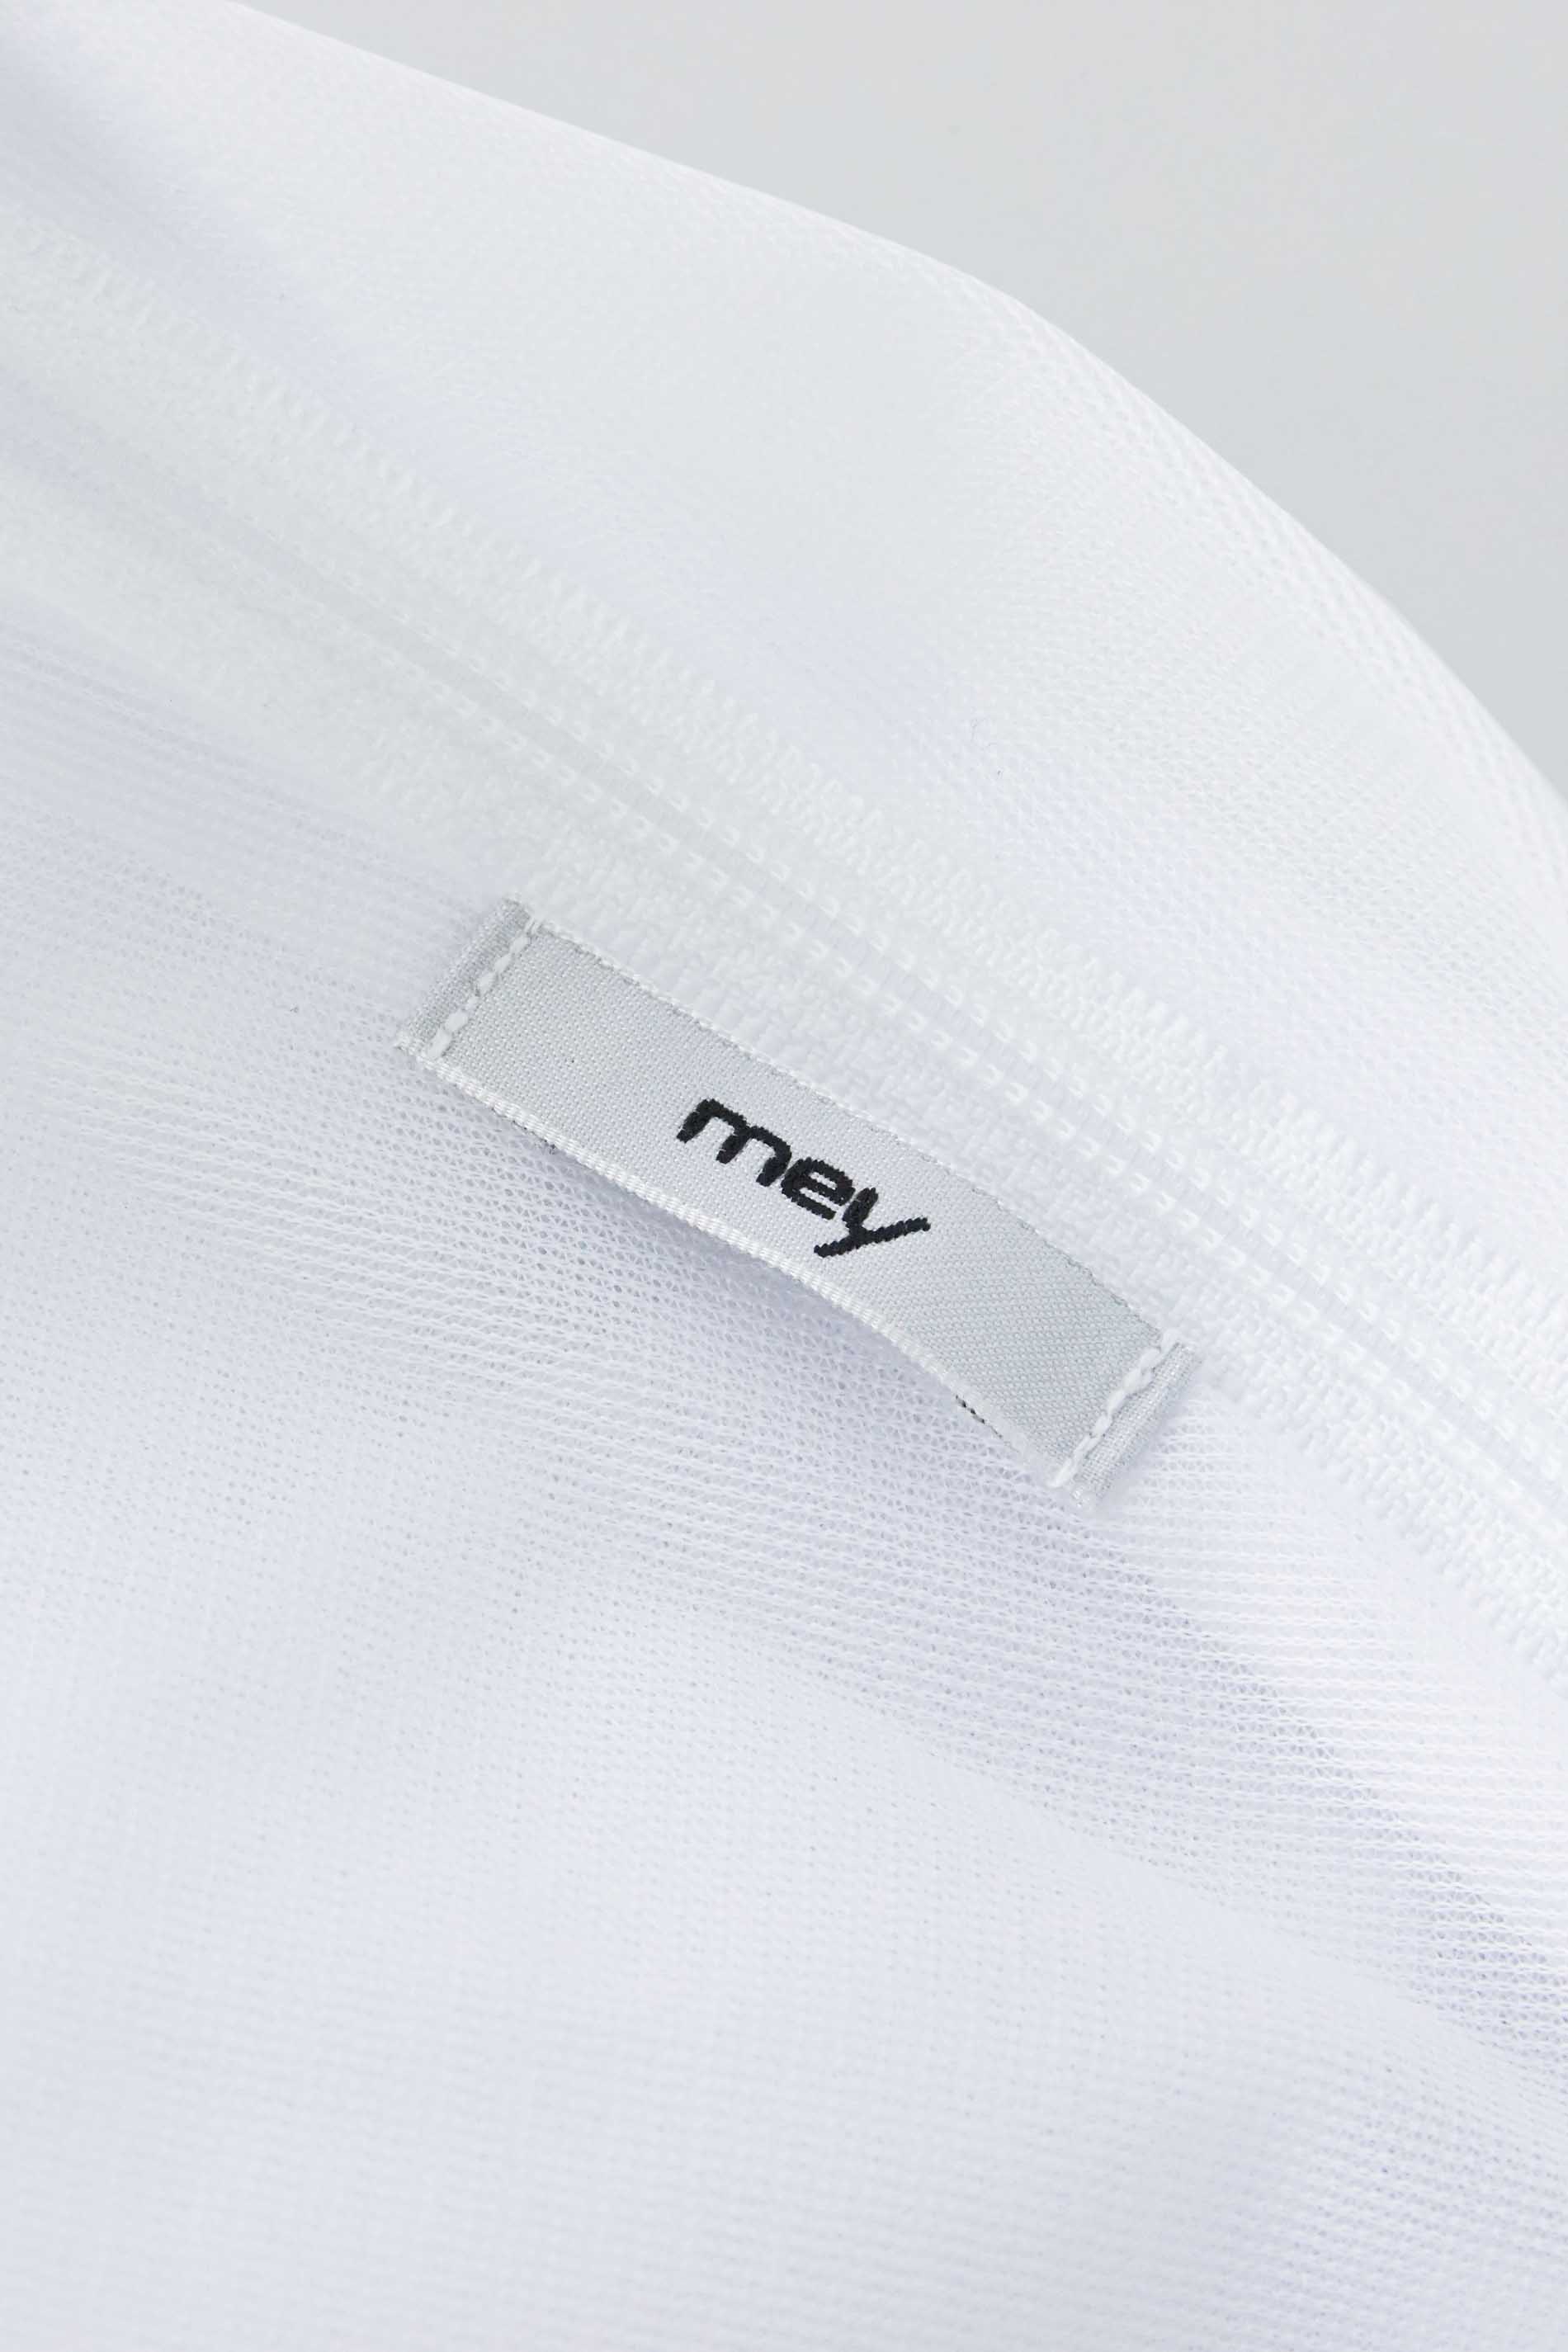 Mey laundry net White Serie Wäschenetz Detail View 01 | mey®